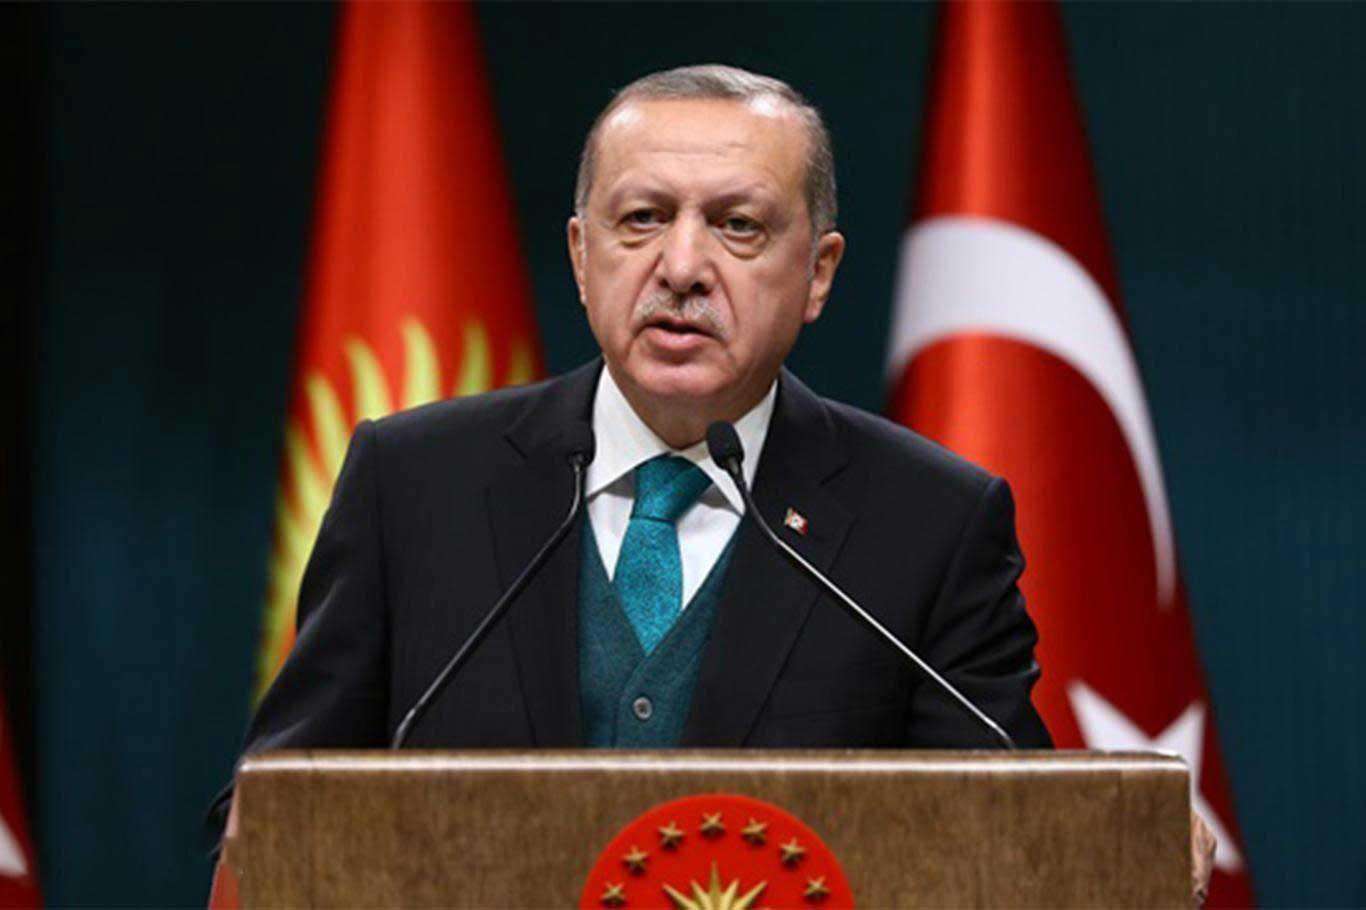 Cumhurbaşkanı Erdoğan: "20 bin öğretmen ataması yapacağız"